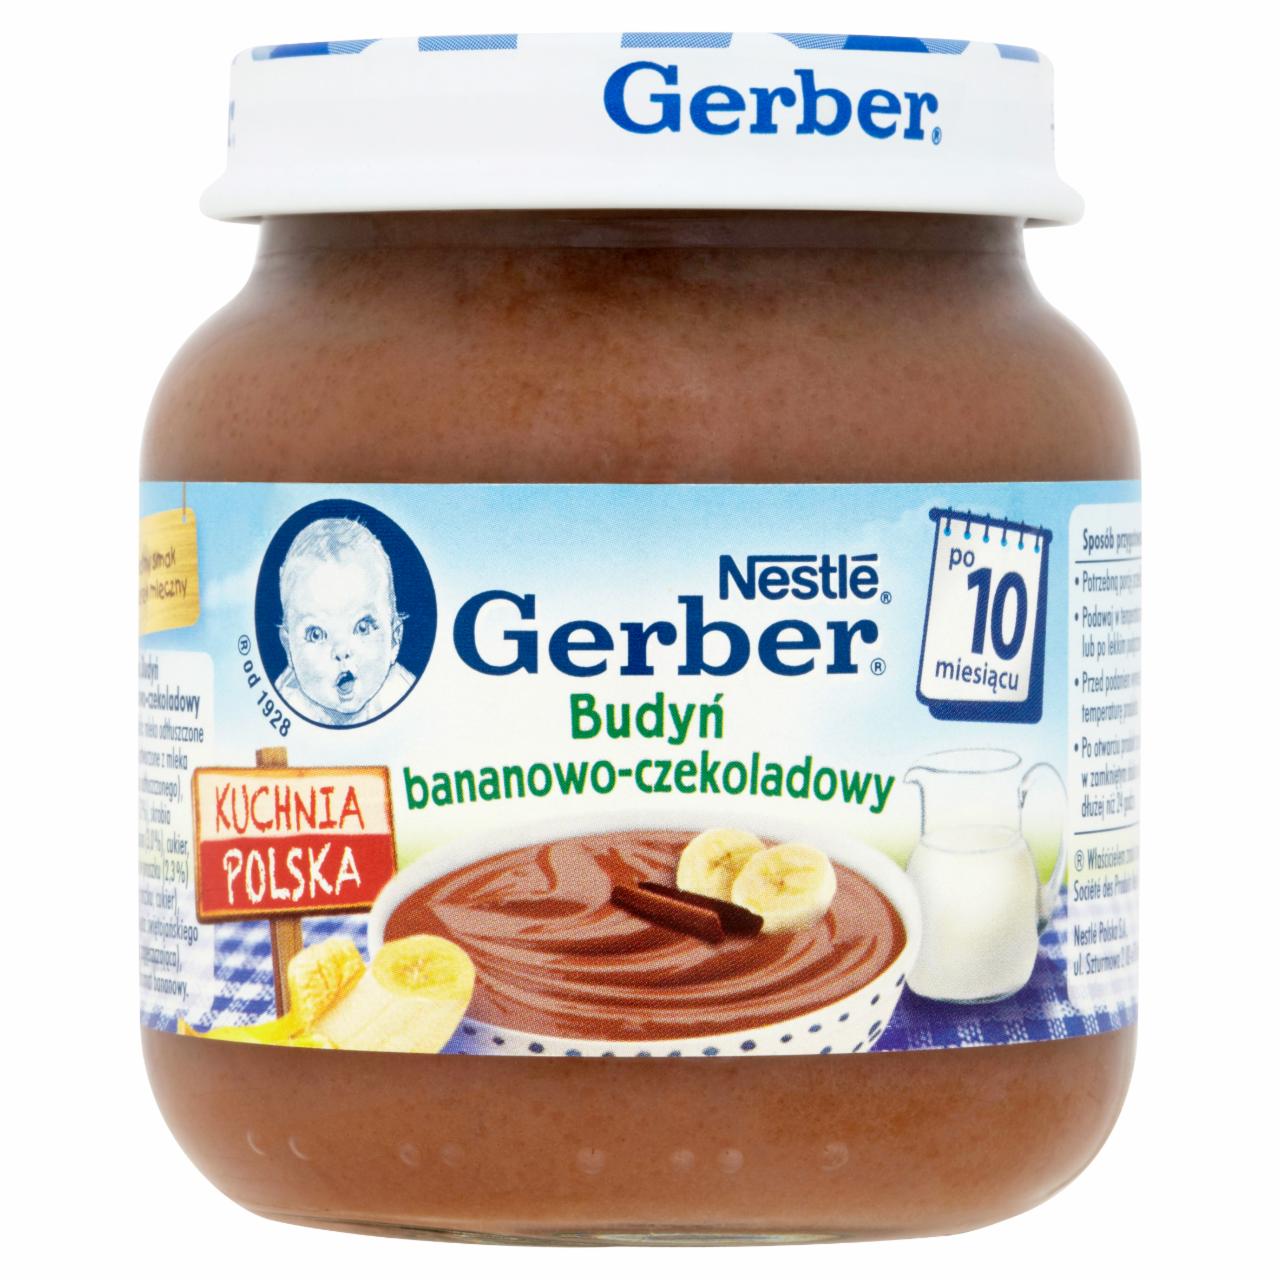 Zdjęcia - Gerber Kuchnia Polska Budyń bananowo-czekoladowy po 10 miesiącu 125 g